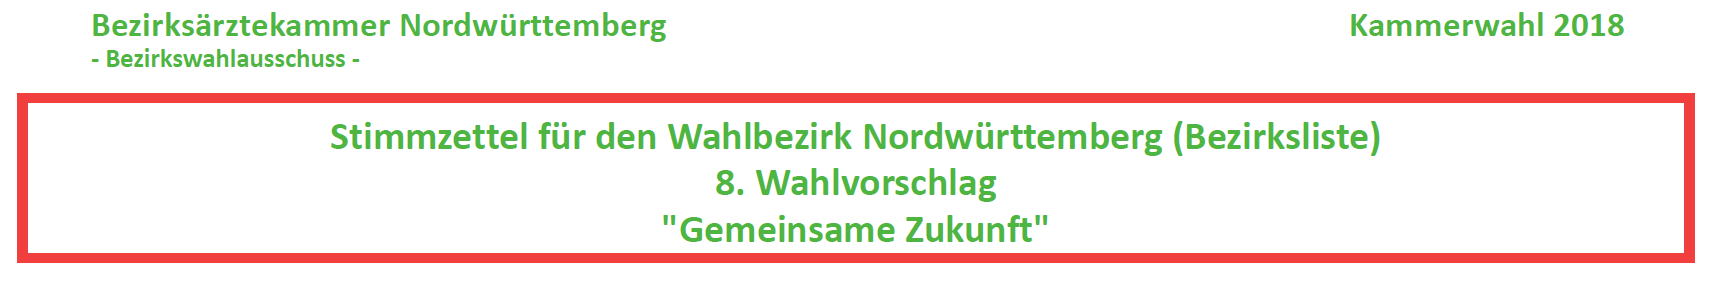 Bezirksärztekammer Nordwürttemberg: Stimmzettel für den Wahlbezirk Nordwürttemberg (Bezirksliste) 8. Wahlvorschlag "Gemeinsame Zukunft"